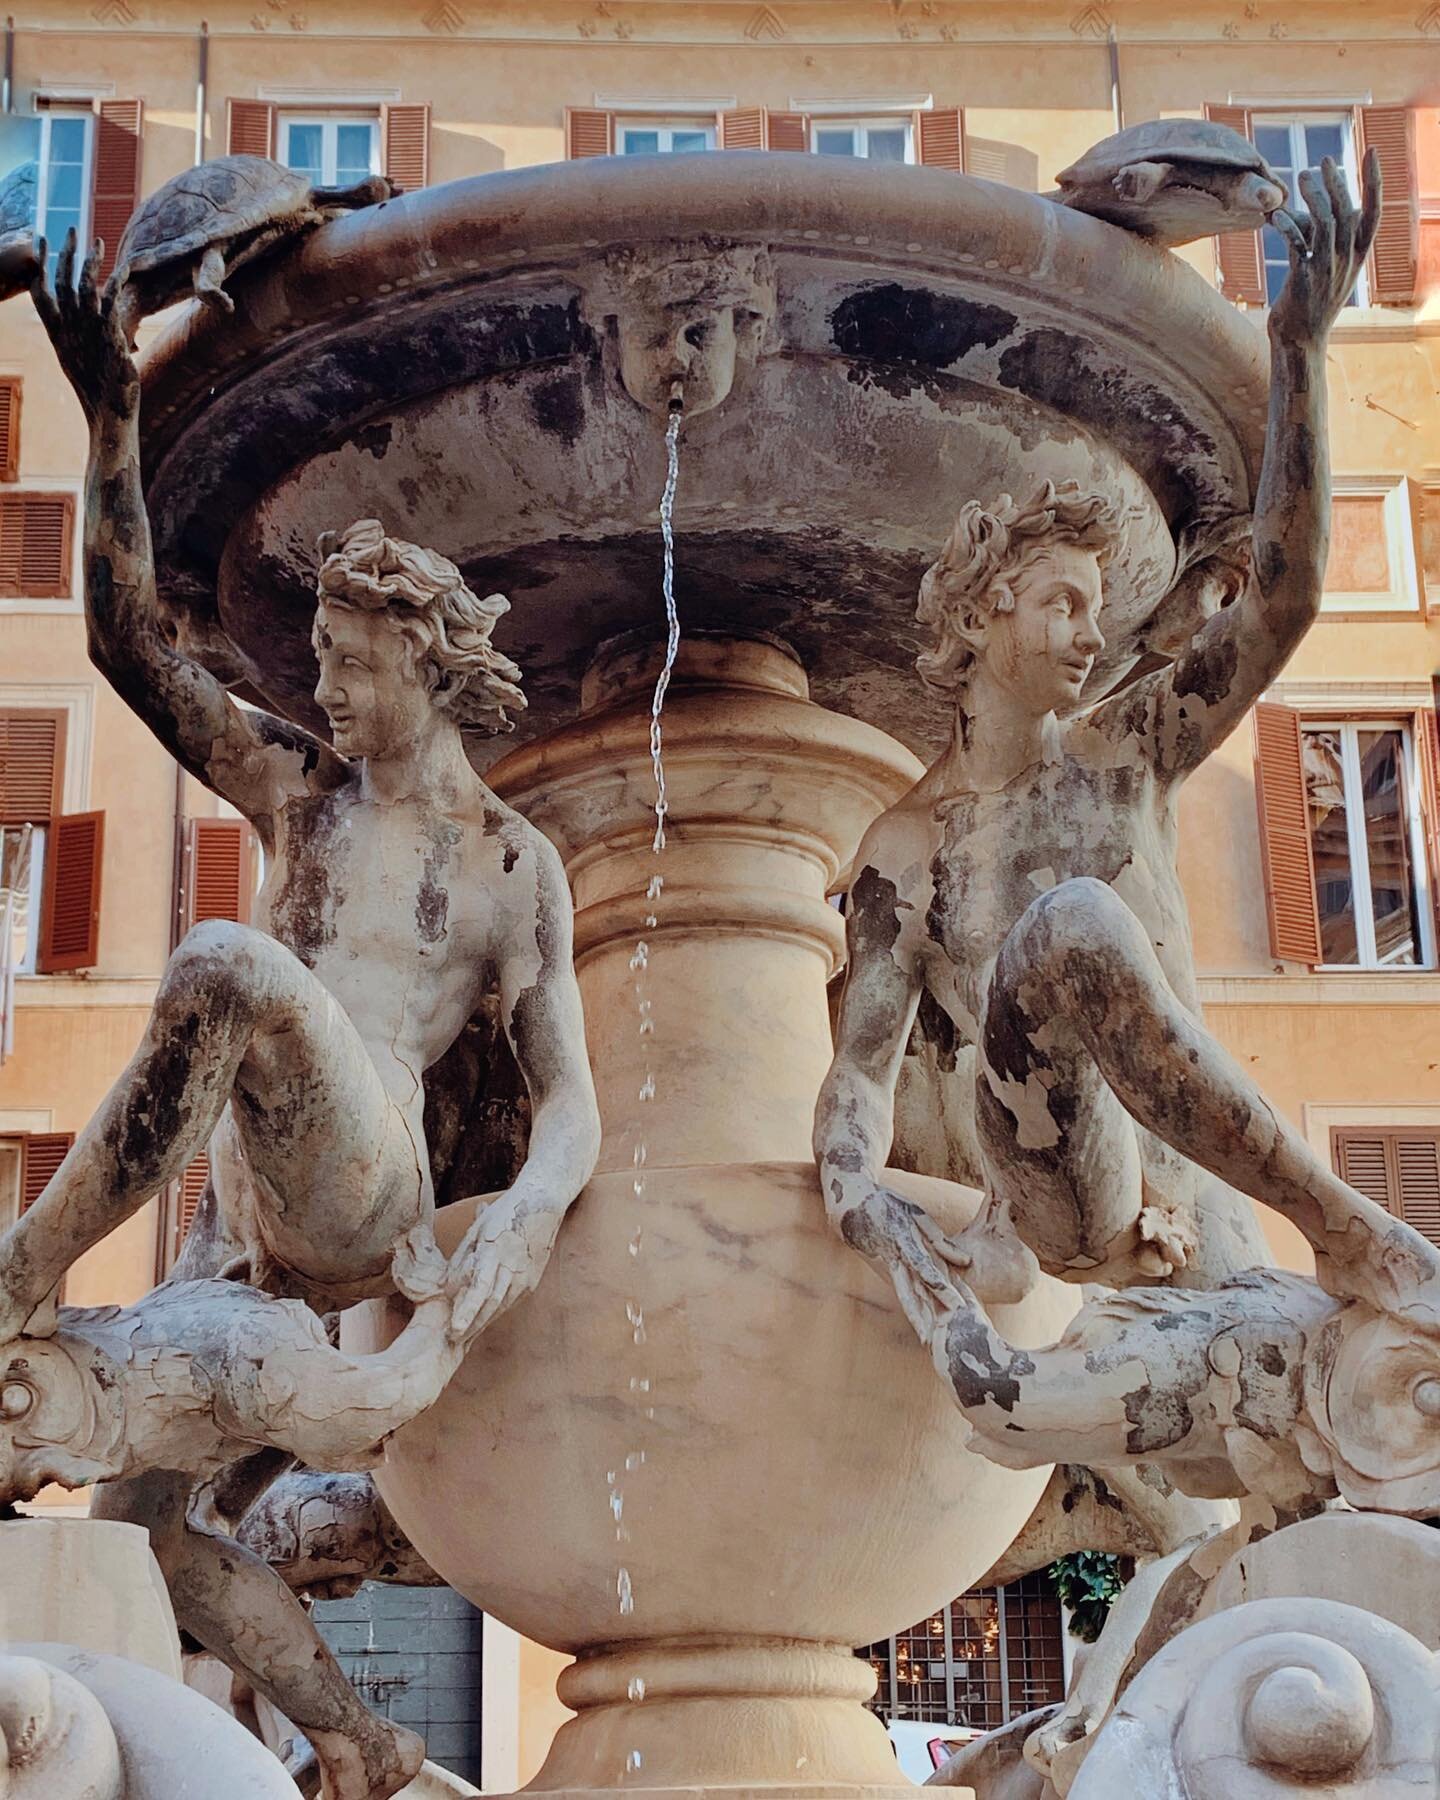 Riconosci questa Fontana? Si, &egrave; proprio la &ldquo;Fontana delle Tartarughe&rdquo; di Piazza Mattei.

Sapevi che inizialmente non aveva le tartarughe? 

&Egrave; incredibile che a volte le cose pi&ugrave; belle nascano a causa di un errore&hell